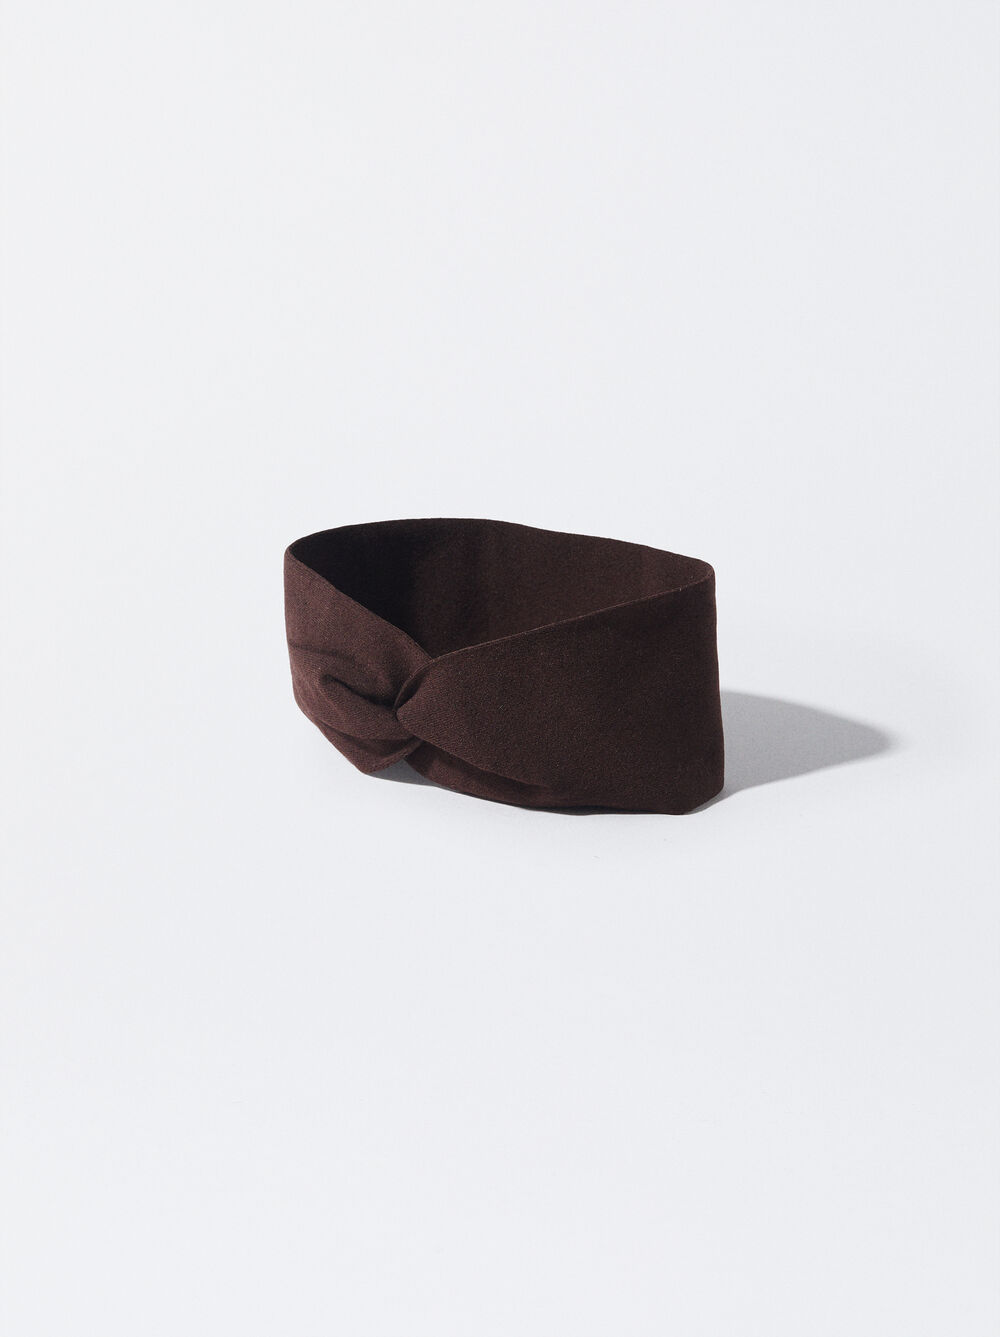 Turban-Style Headband